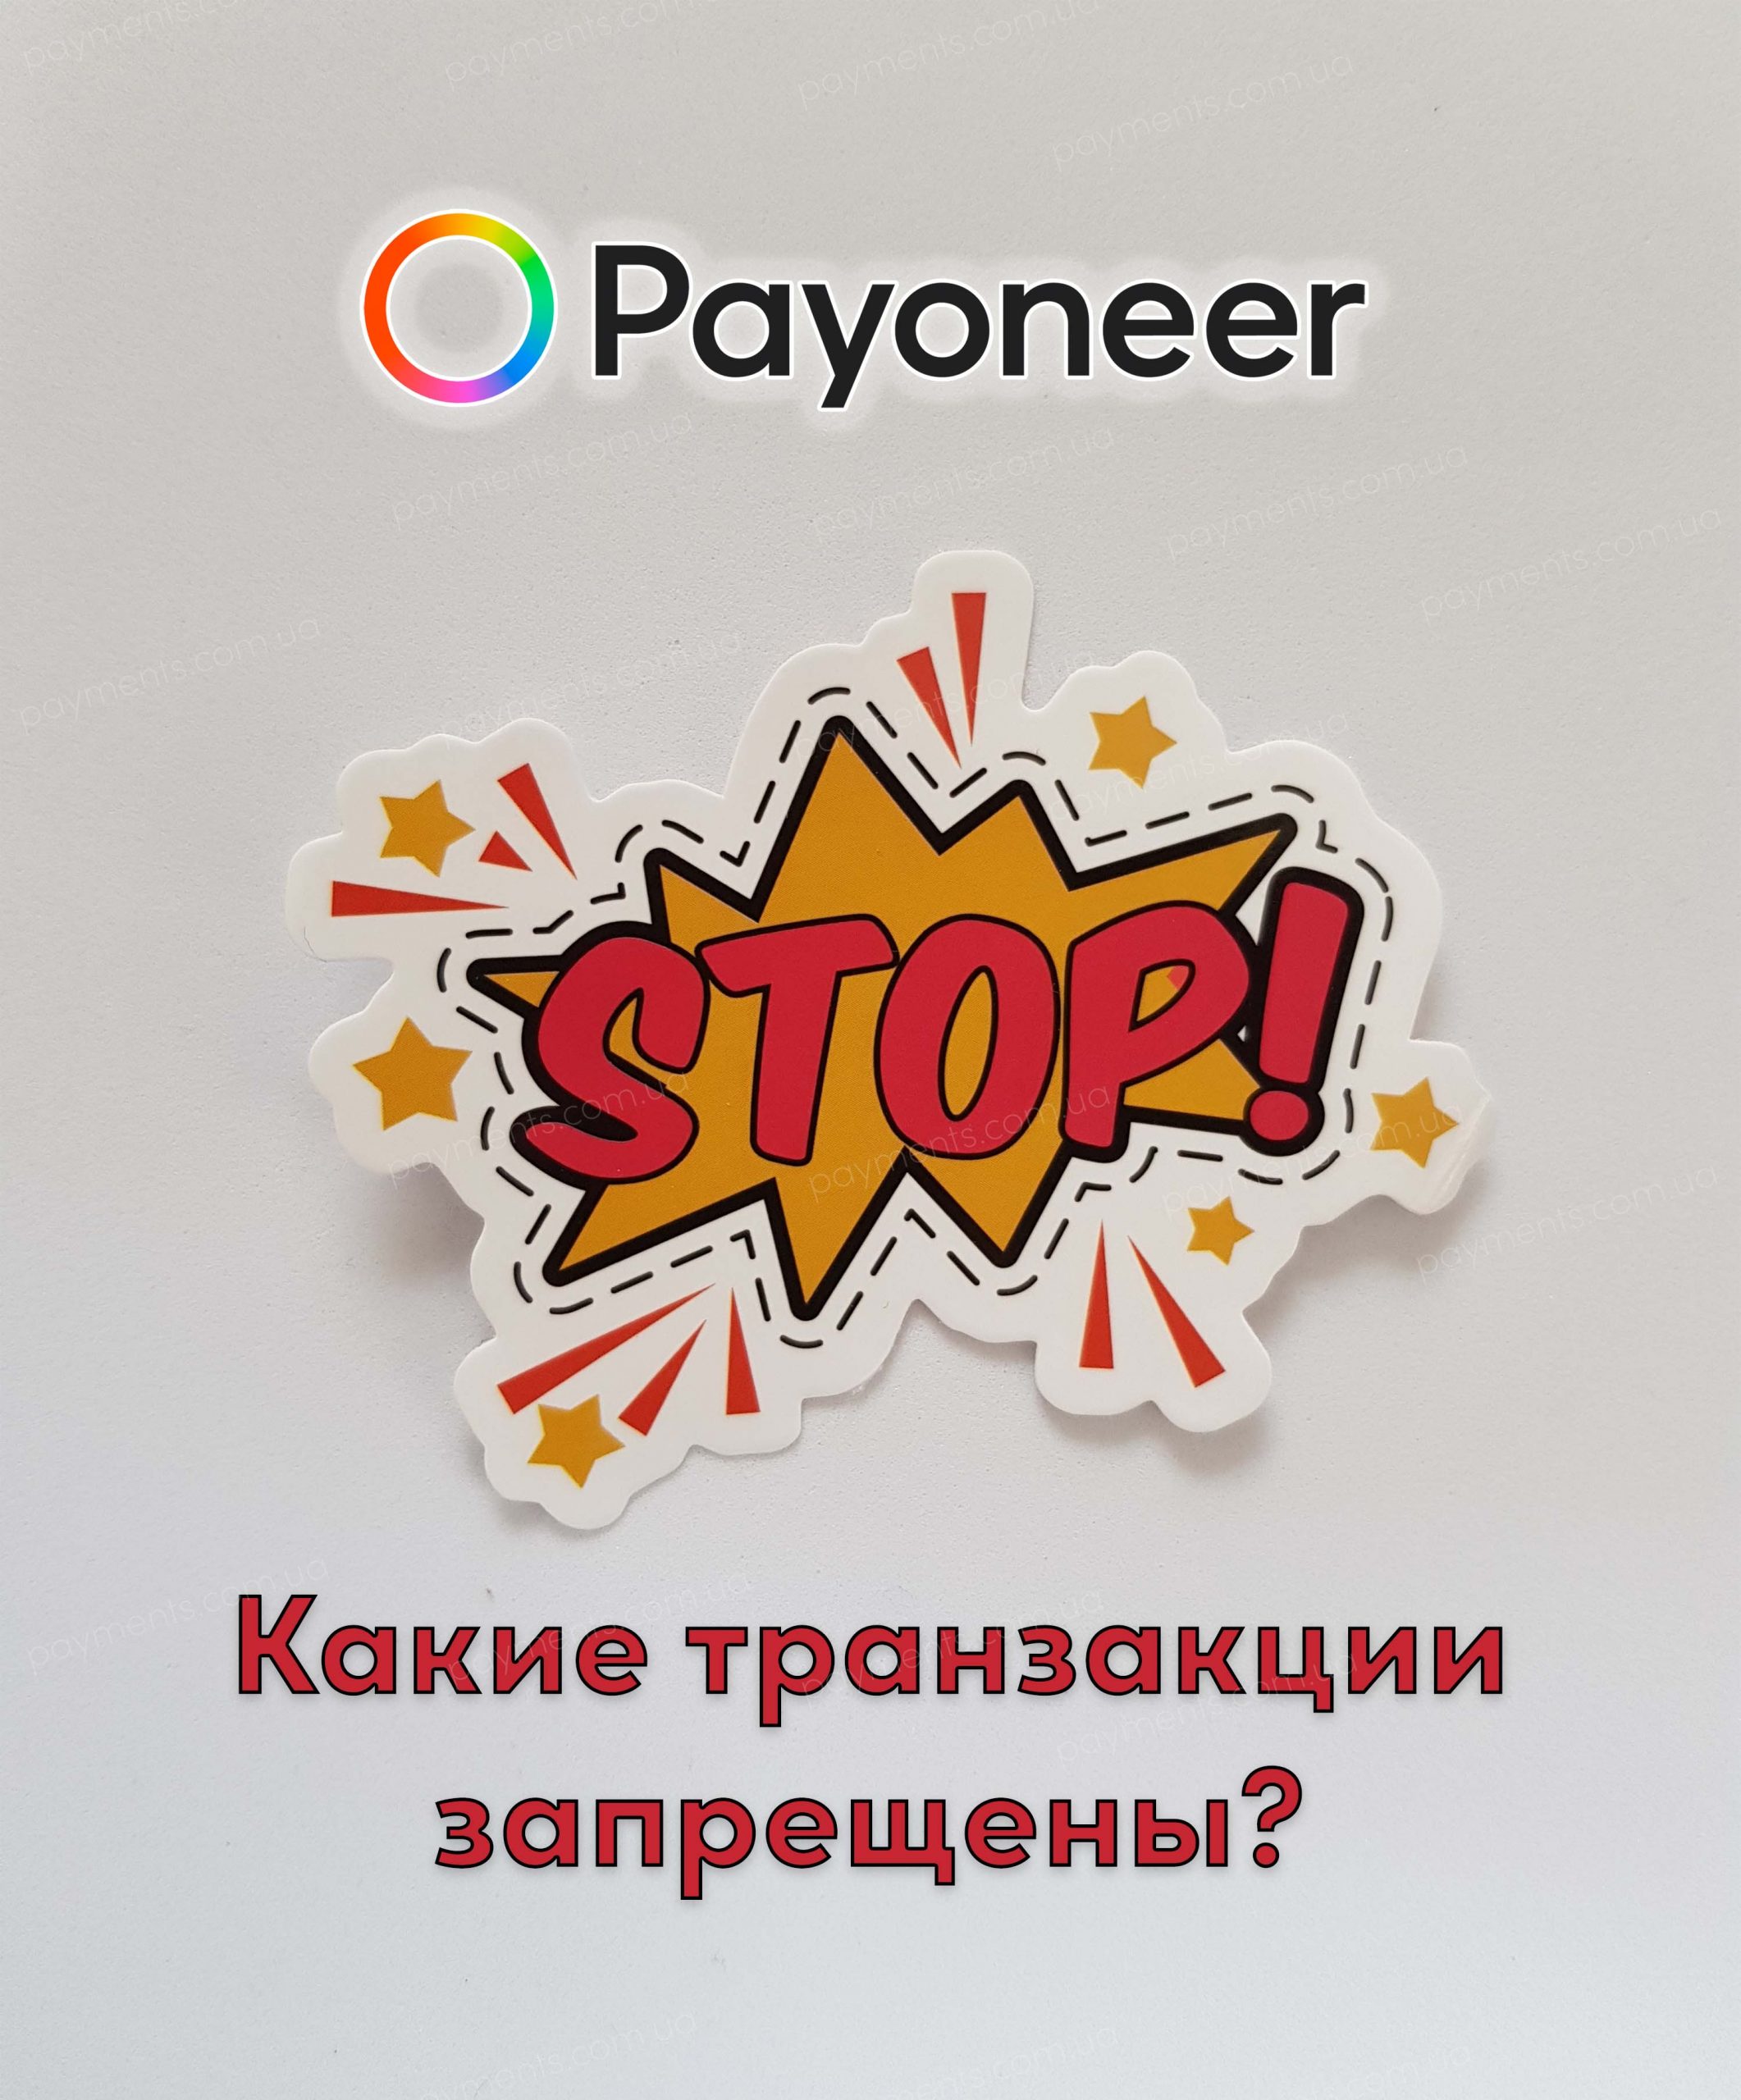 Запрещённые сферы деятельности и транзакции в Payoneer